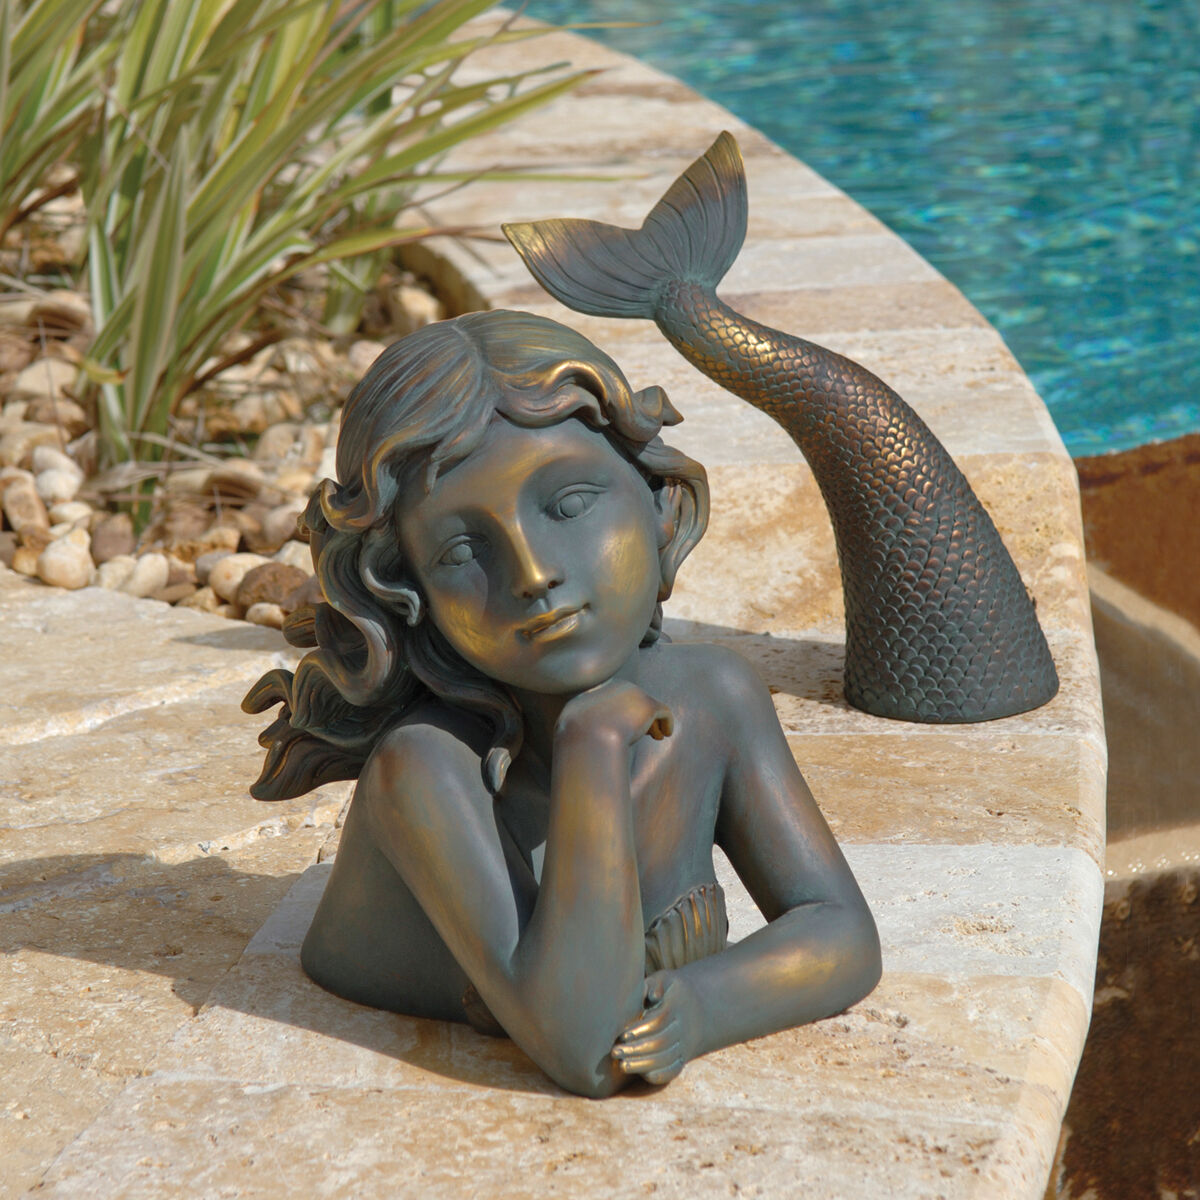 Two Piece Maritime Beauty Sweet Siren Mermaid Garden Flowerbed Pool-Side Swimmer